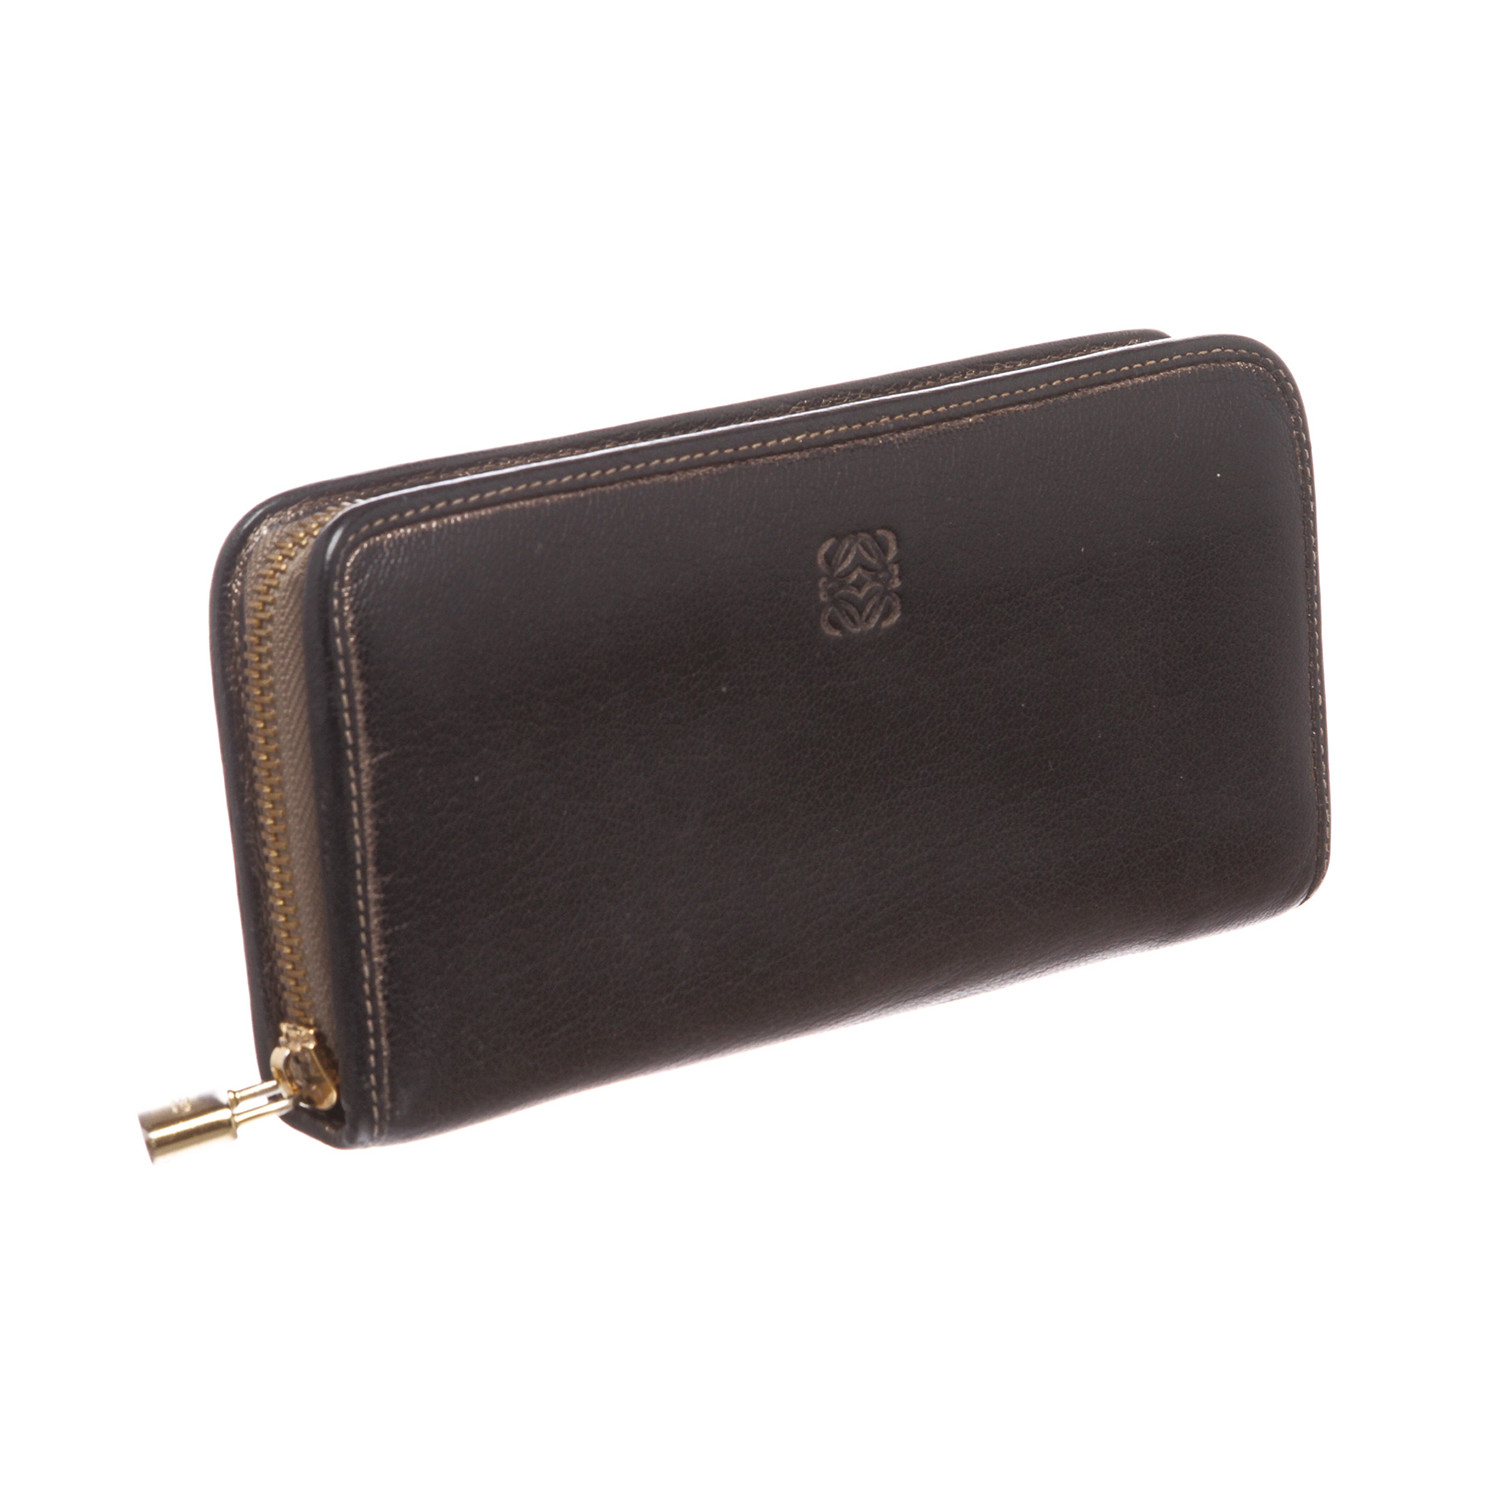 Loewe // Leather Long Zip Wallet // Black // Pre-Owned - Pre-Owned Designer Bags & Wallets